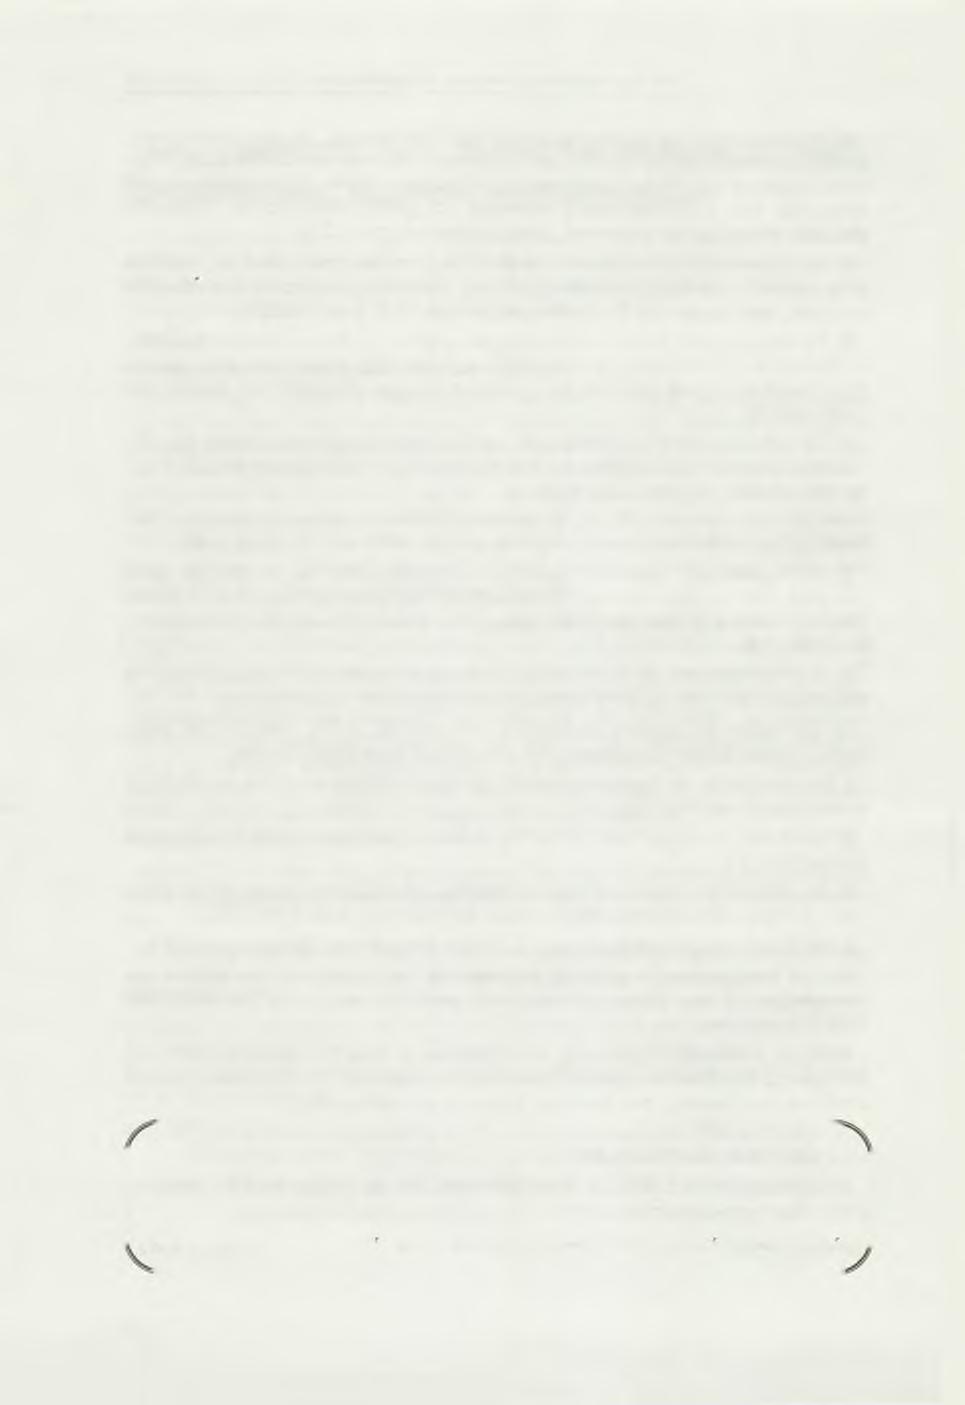 «Συνεταιριστική Π ορεία» τ. 66/2002 Και ο πρόεδρος της Ε.Α.Σ. Μεσολογγίου Νουπακτίας κ. Ανδρέας Παναγιωτόπουλος, διαπιστώνει, κρίνει και σχολιάζει: Με επιστολή του (No 459